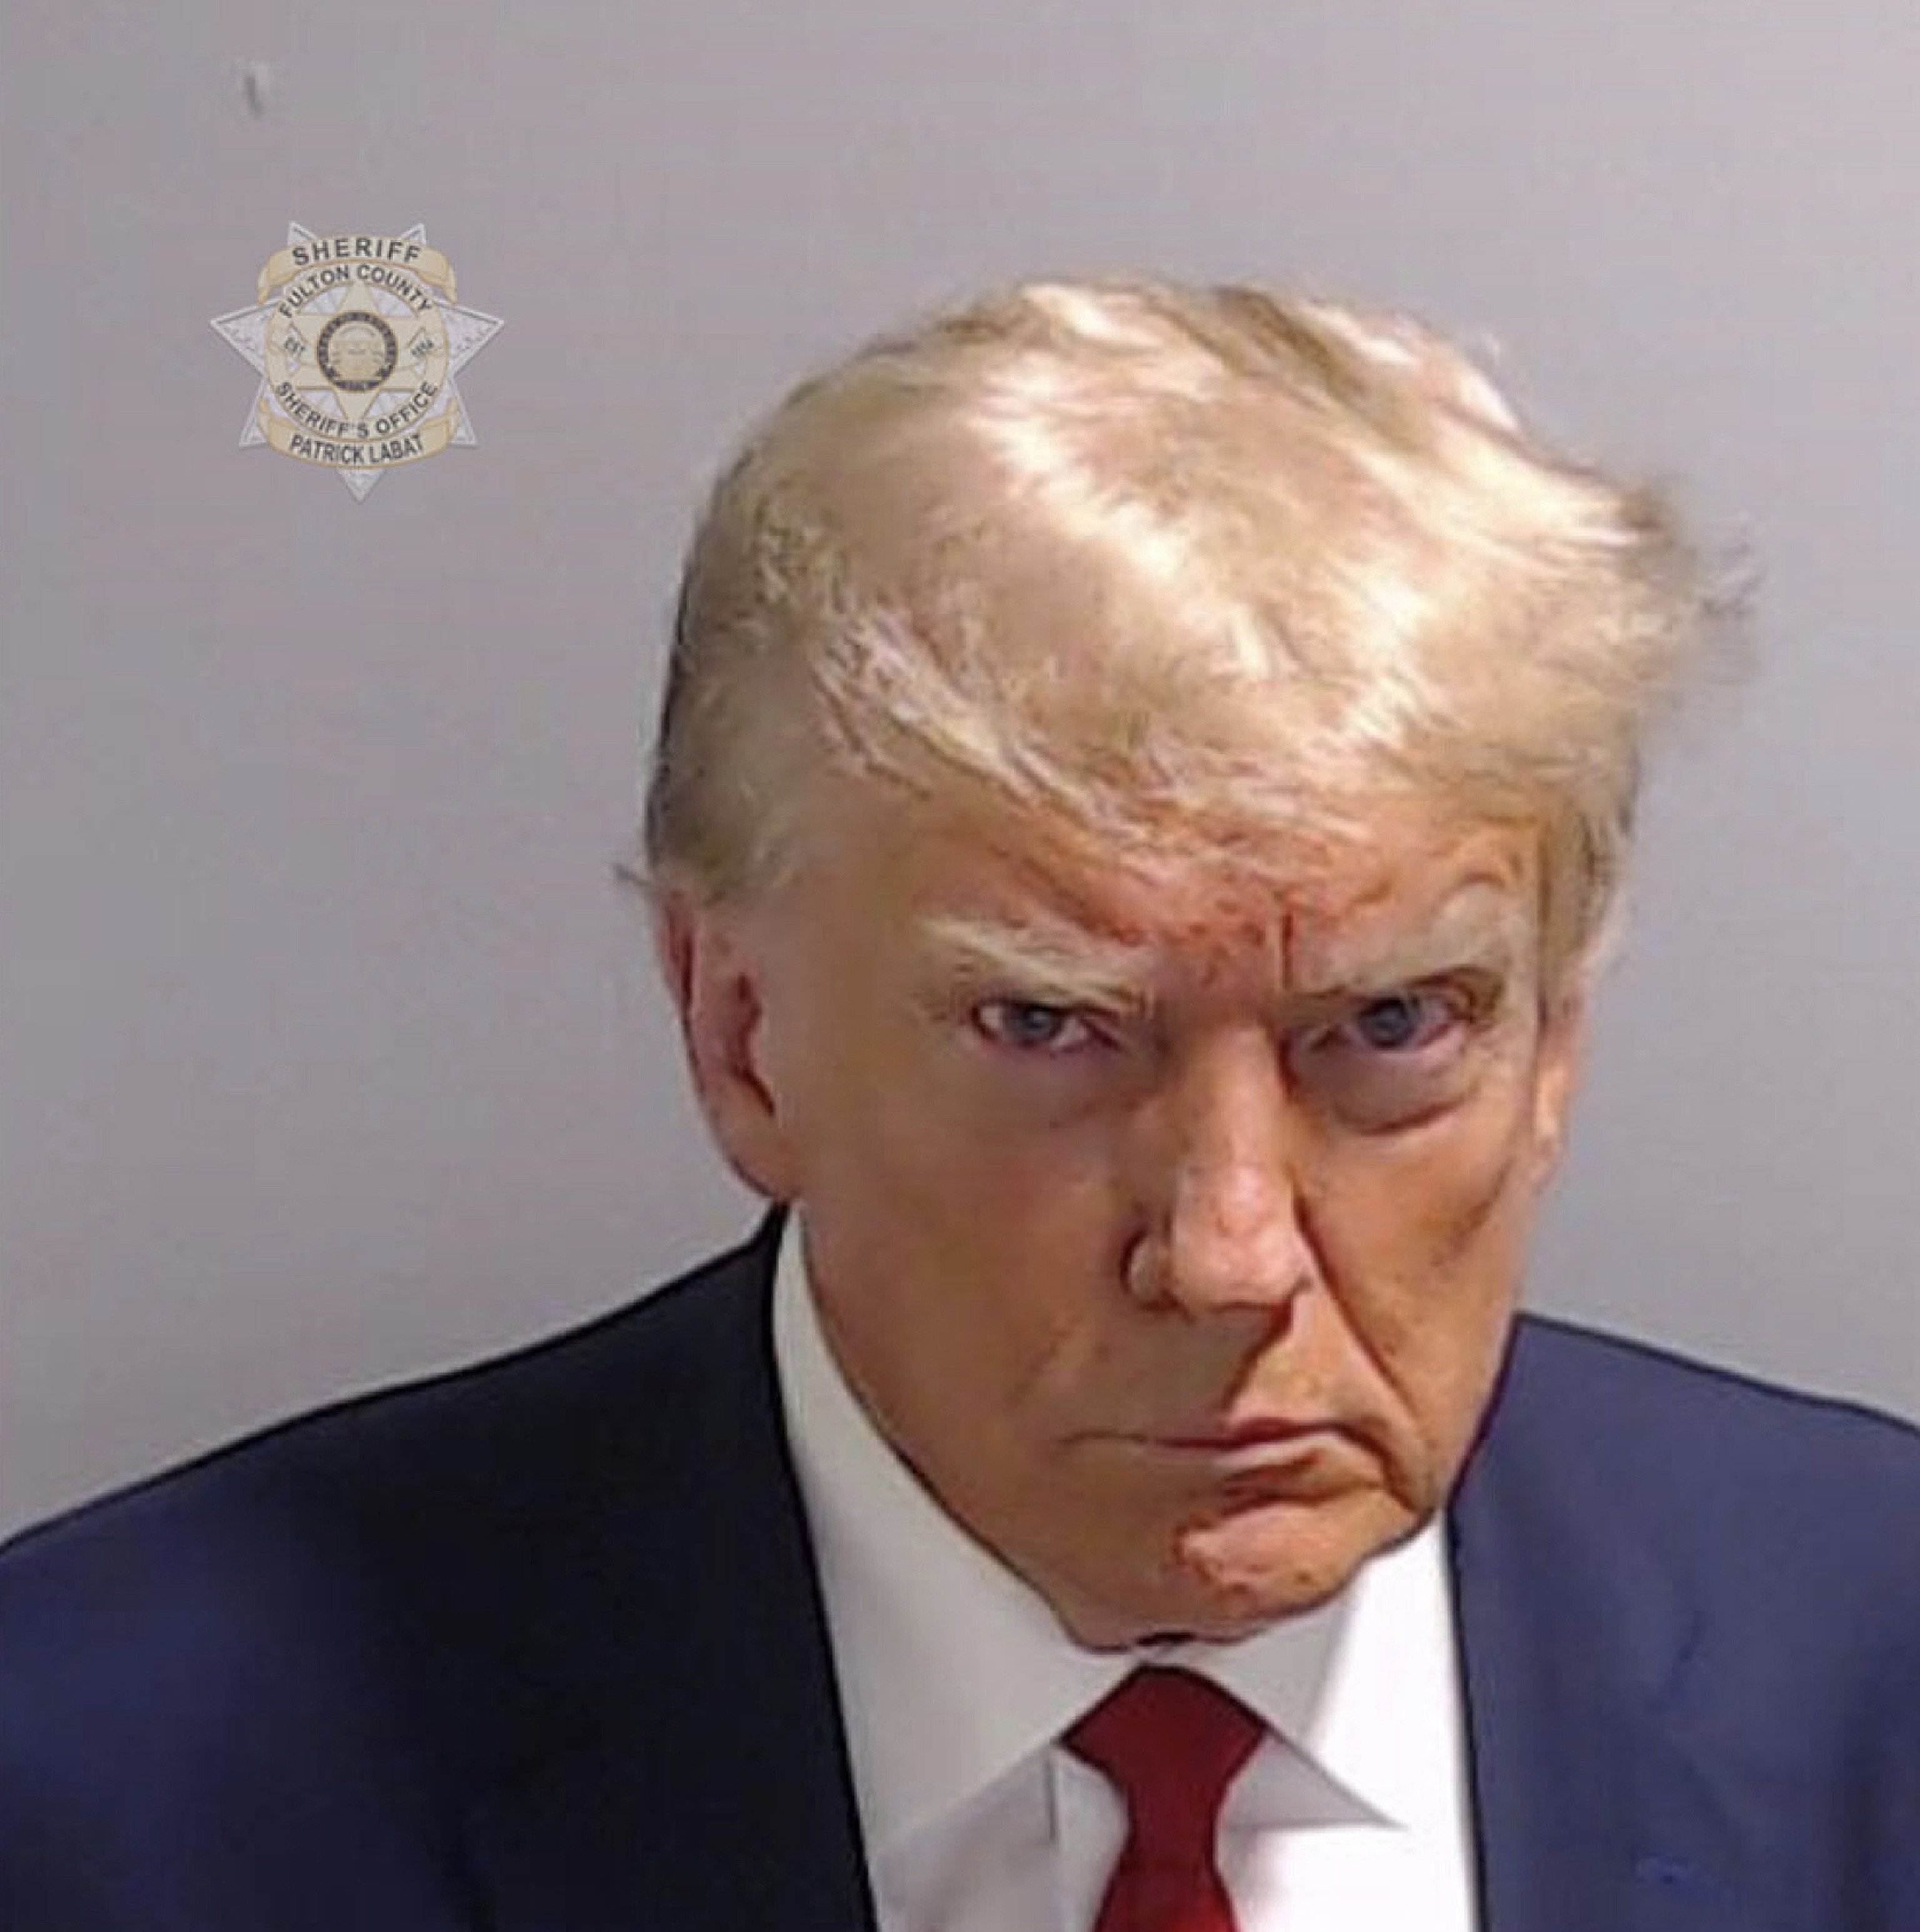 Trump guanya 7 milions de dòlars fent marxandatge amb la seva fotografia policial